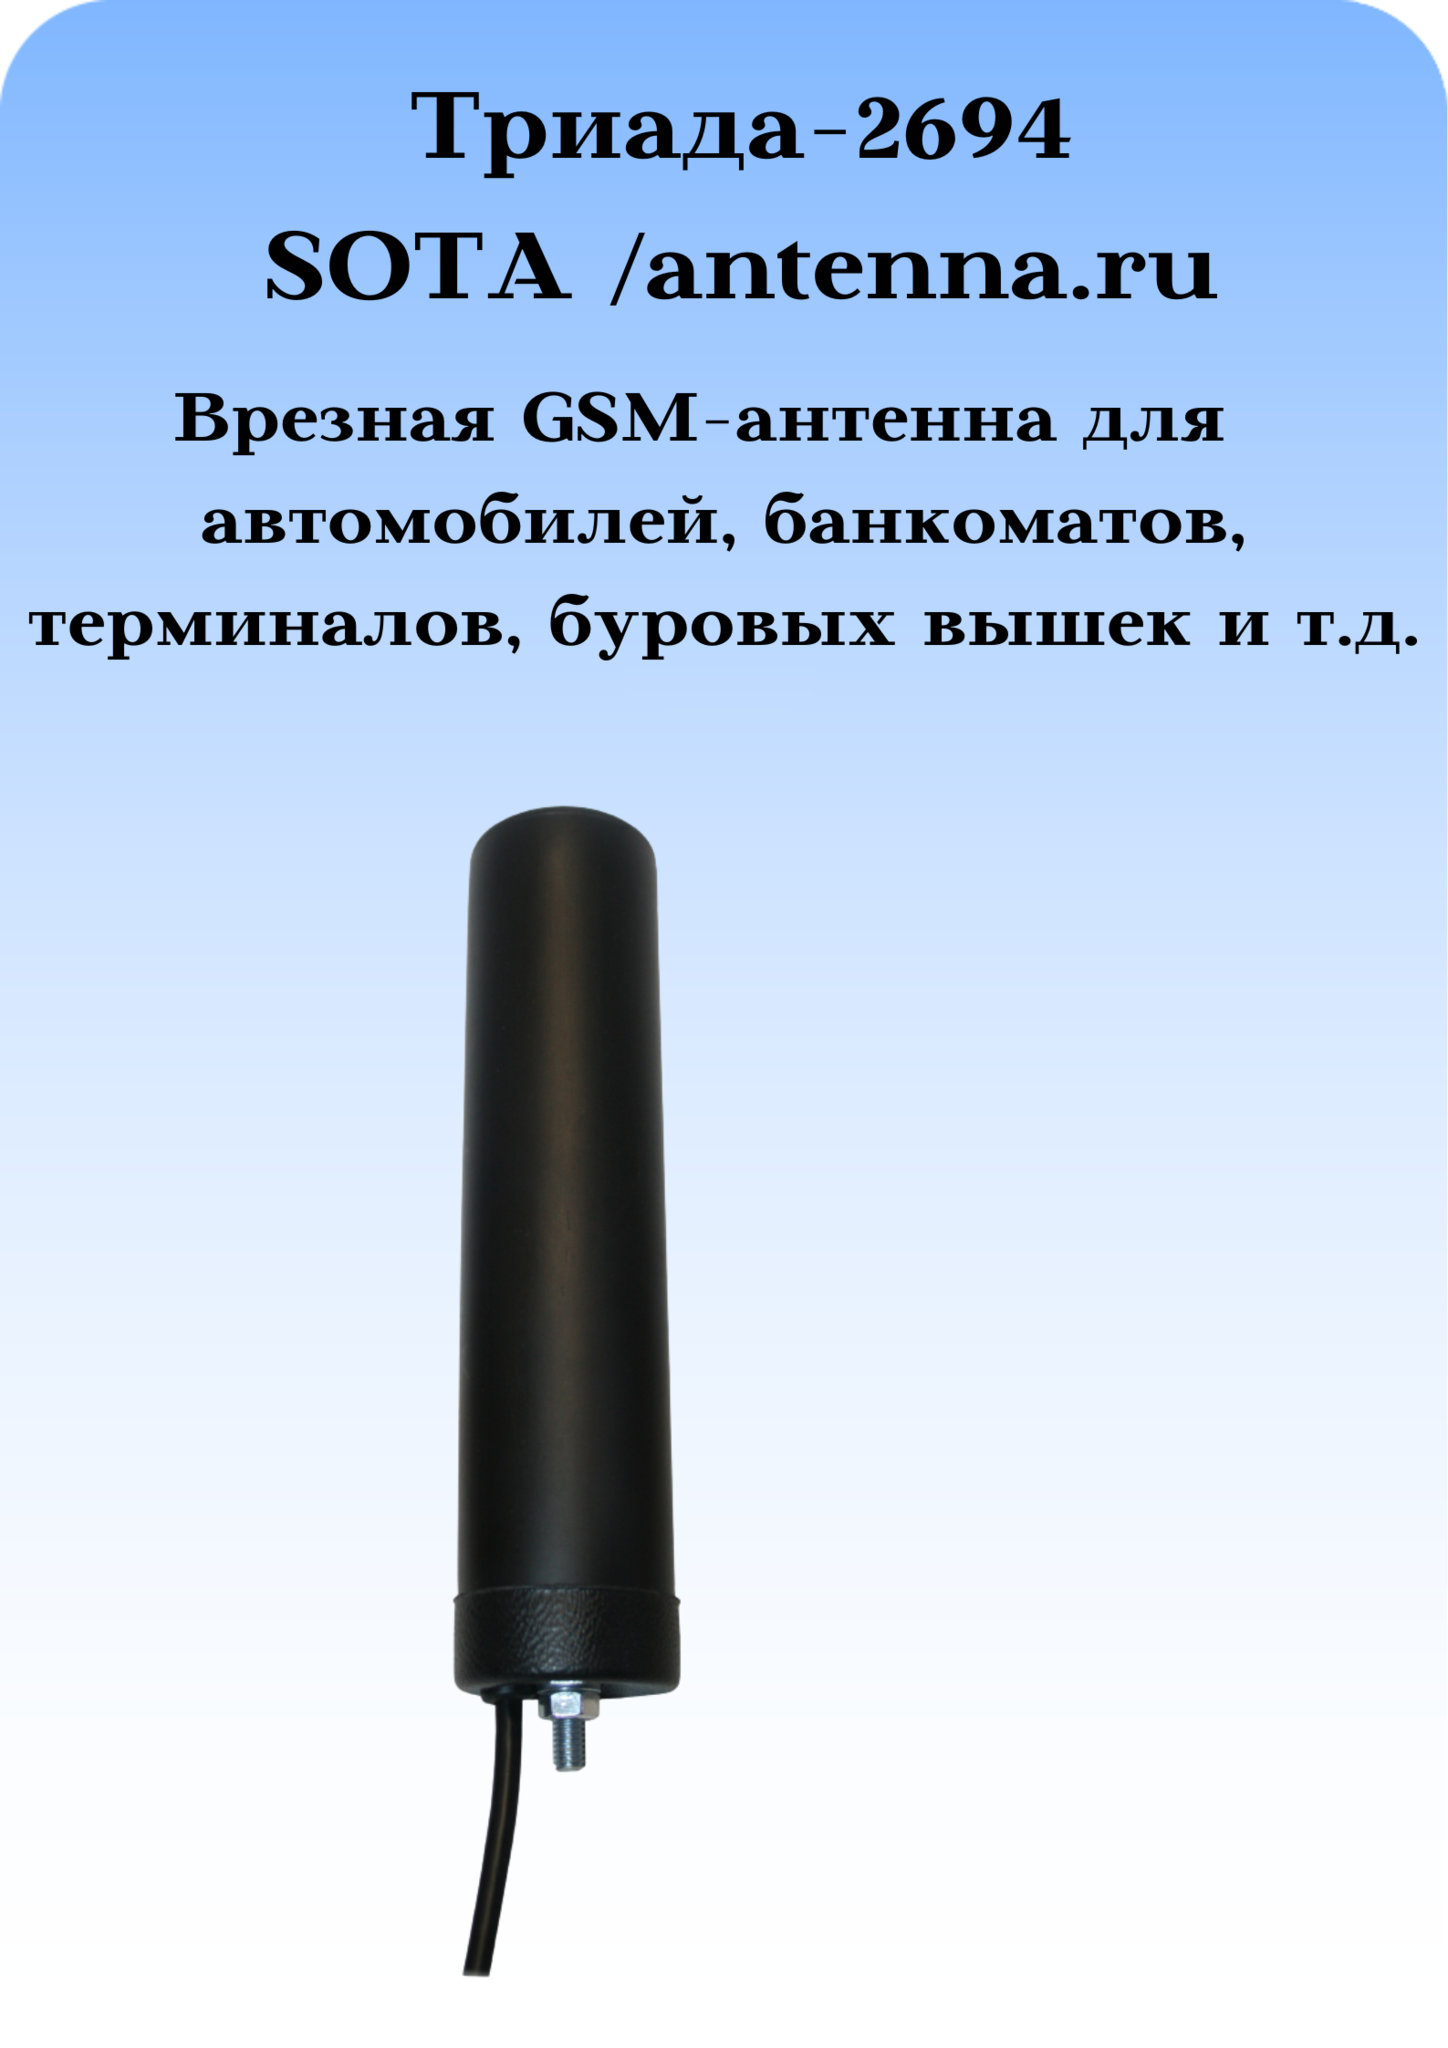 Триада-2694 SOTA/antenna.ru. Антенна 3G/4G/1800/900МГц с большим усилением всенаправленная врезная